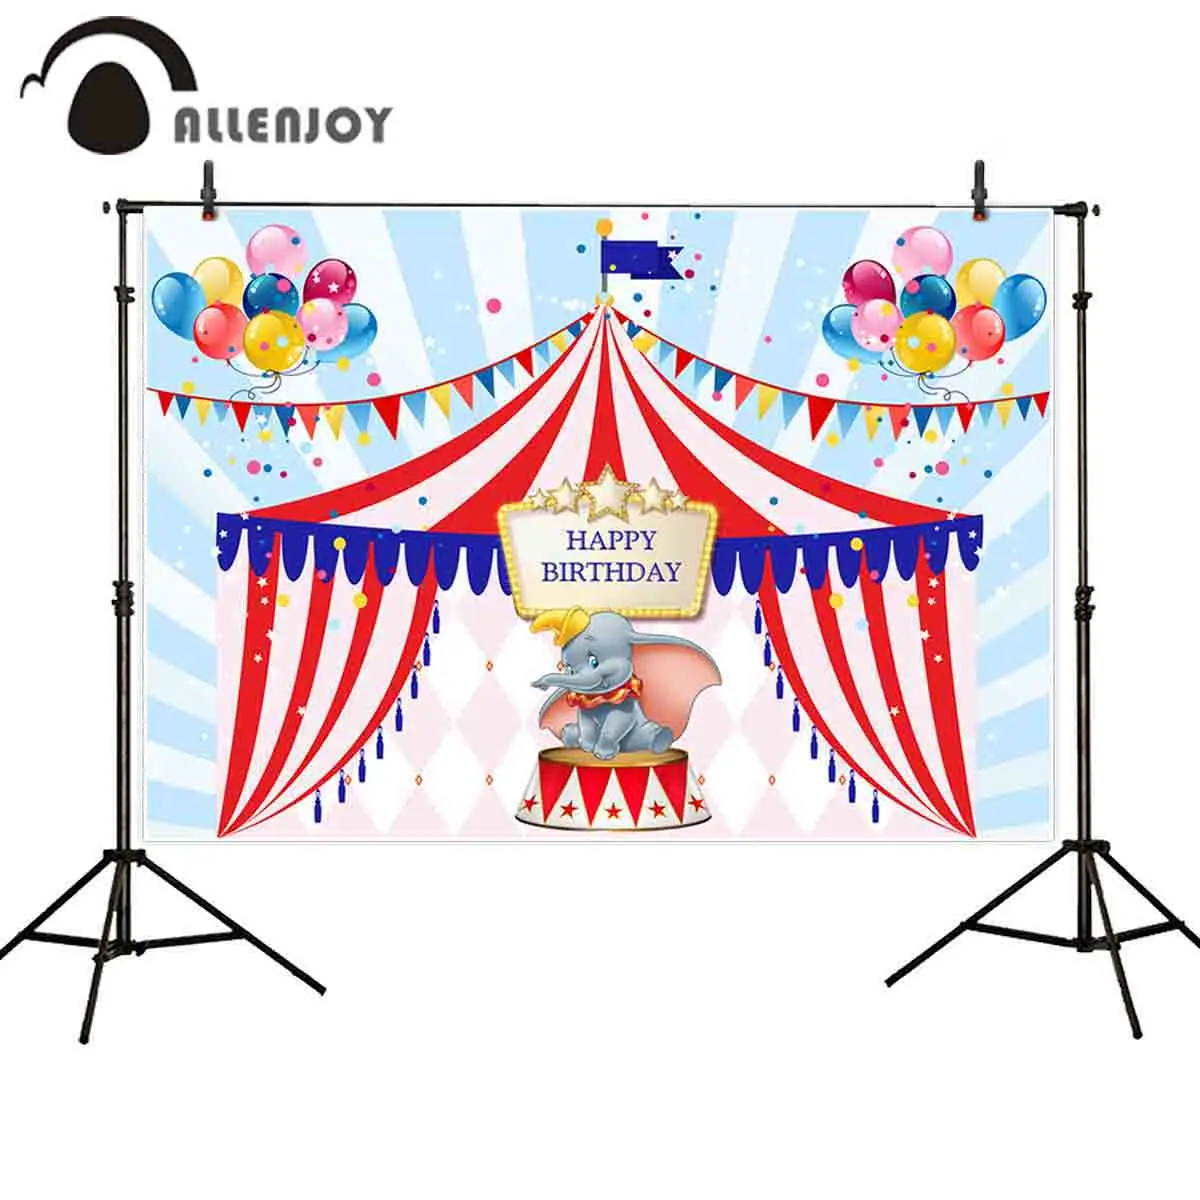 Allenjoy Новые поступления фото фон день рождения цирк Дамбо Золотая рамка воздушный шар фотобудка для фотосессии Студия фотография фон